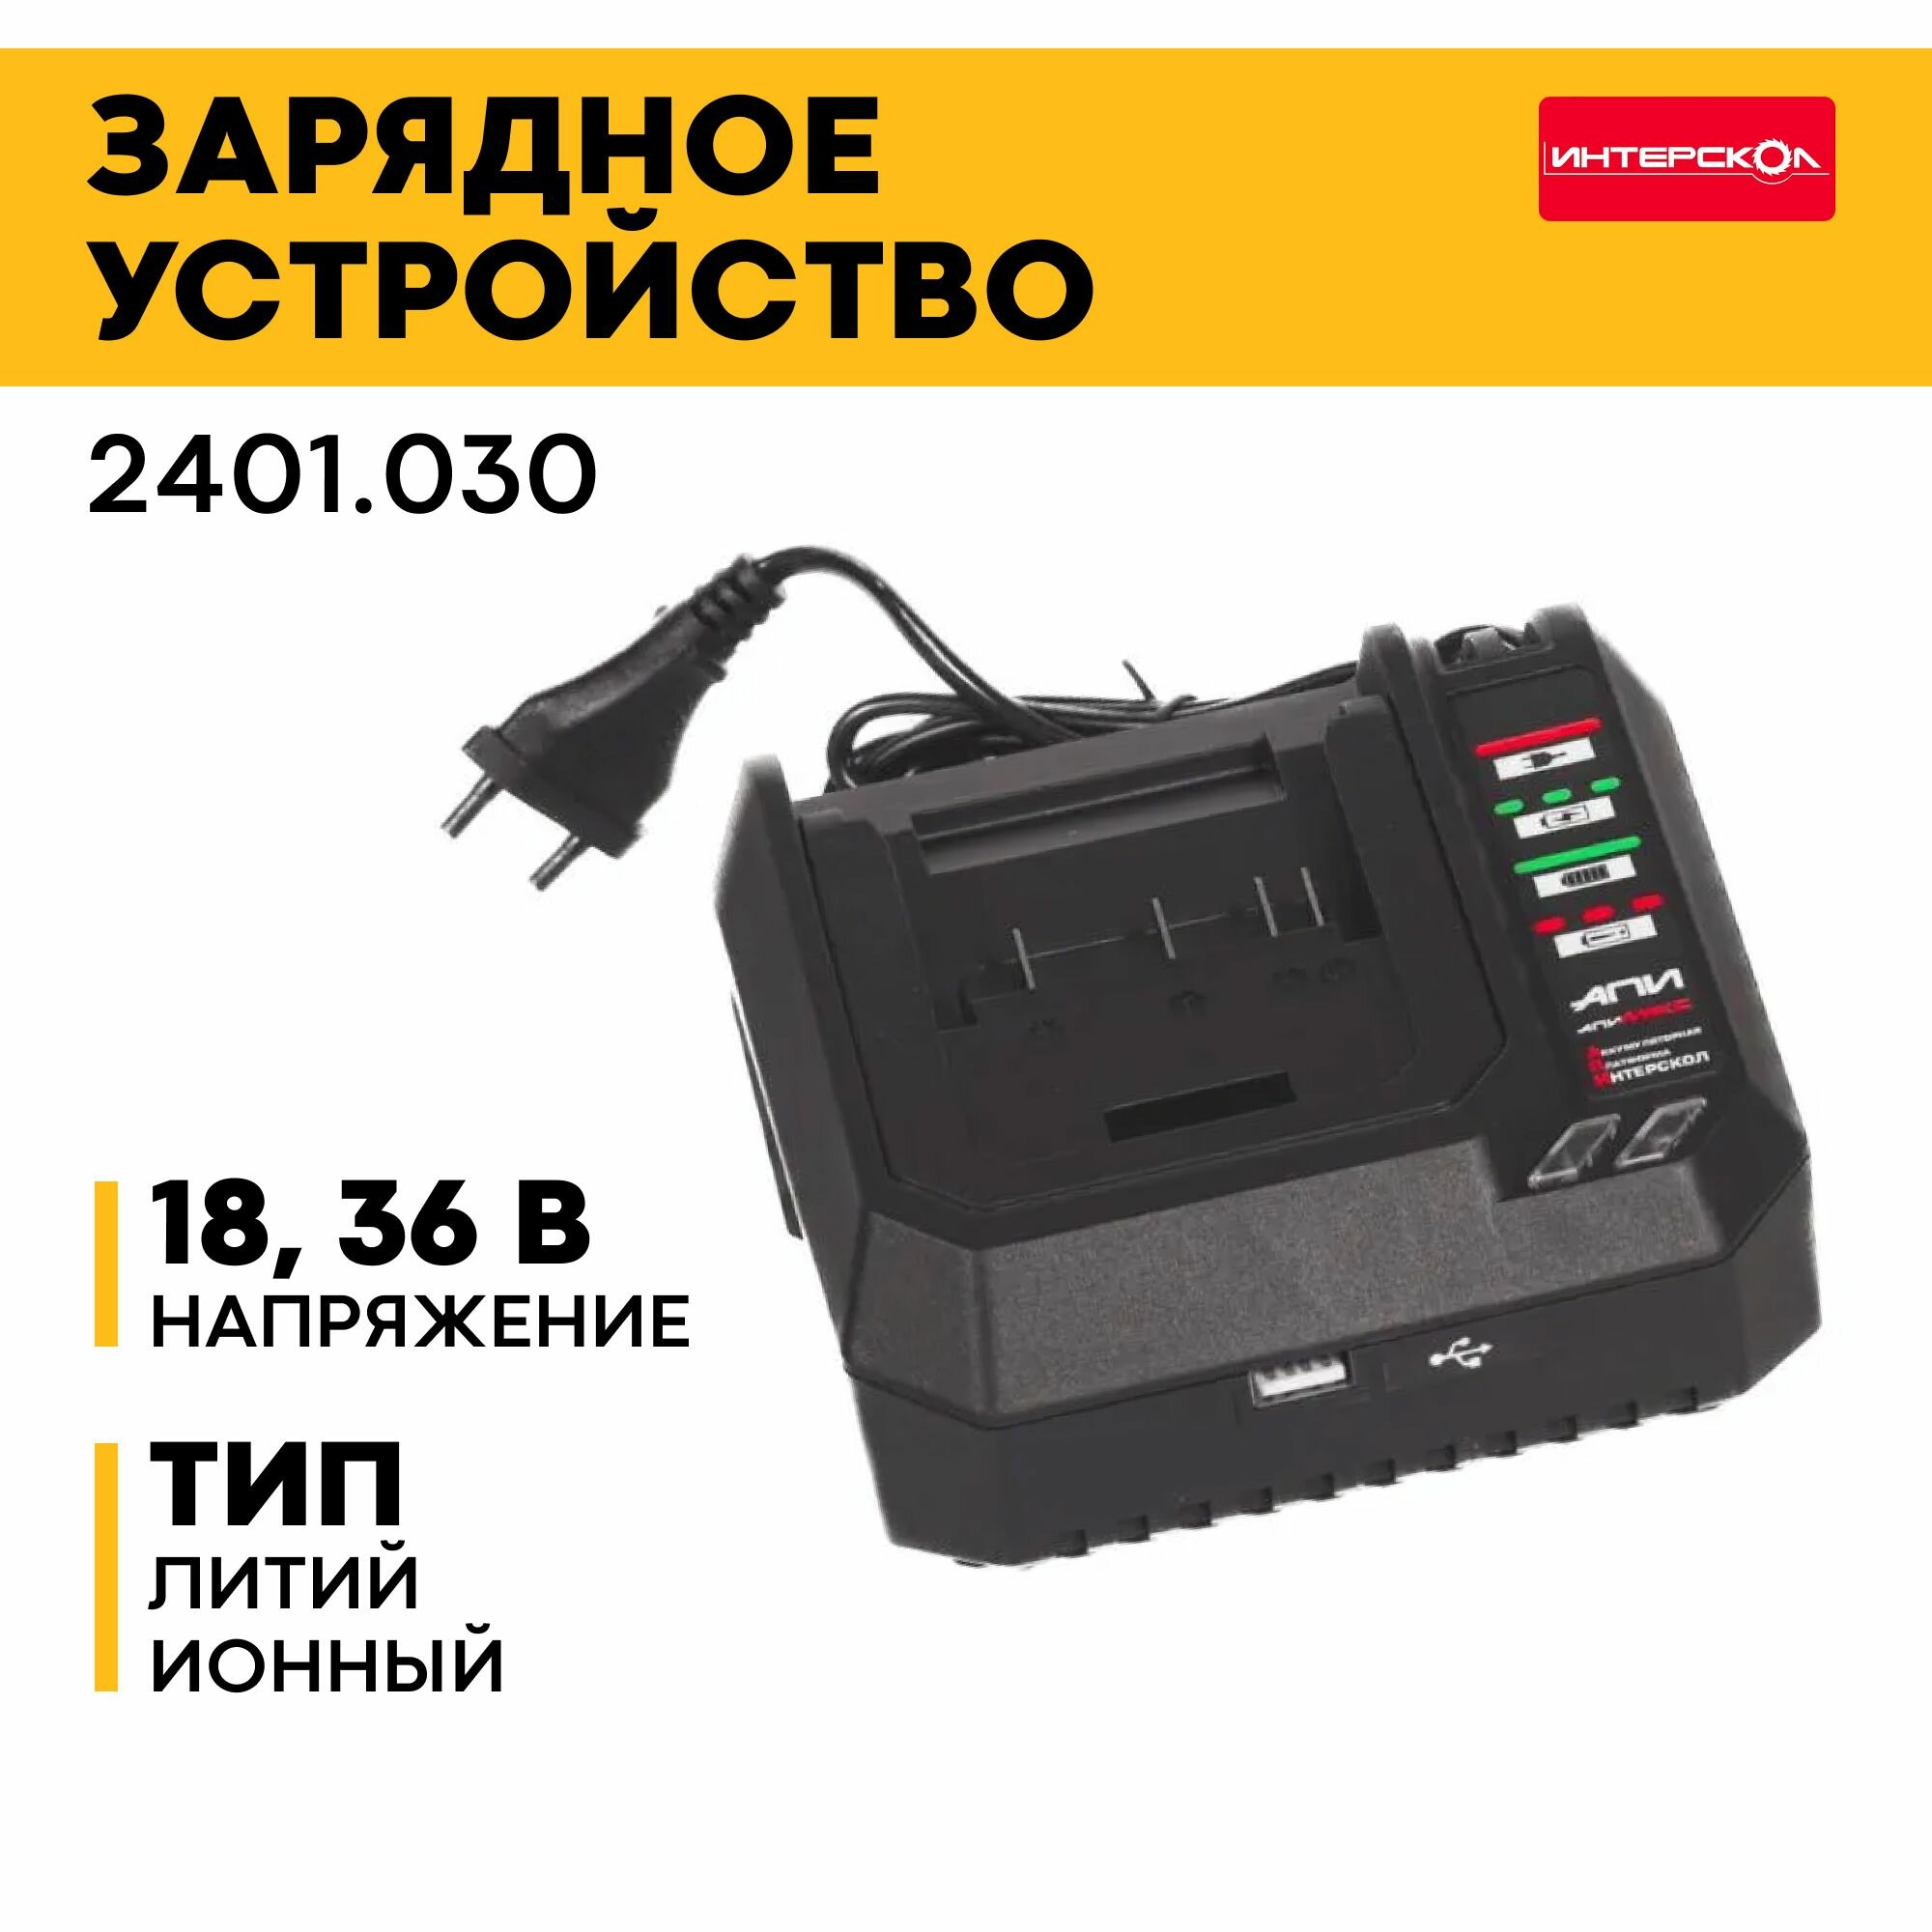 Зарядное устройство ЗУ-4/18 ИНТЕРСКОЛ 2401.030